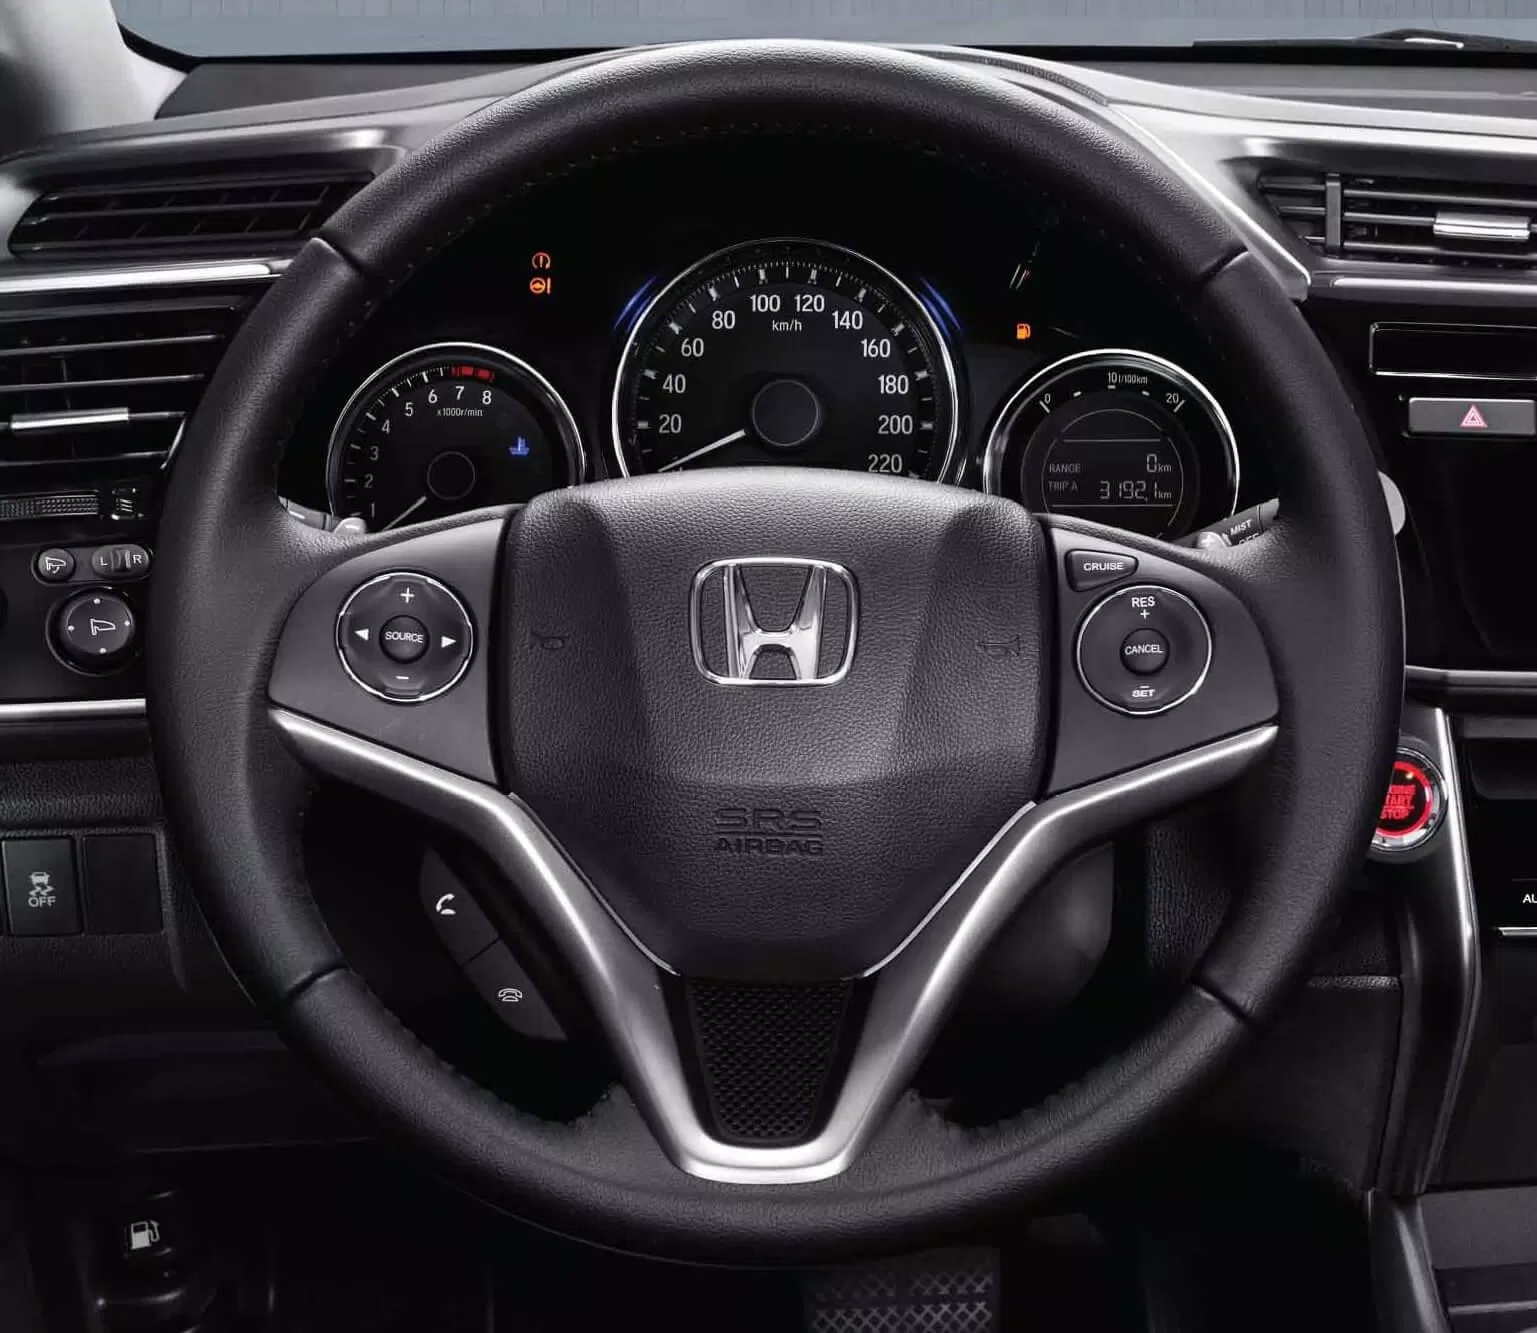 Tay lái Honda City 2019 được trang bị nhiều tiện ích hấp dẫn (Ảnh : Honda Vietnam)